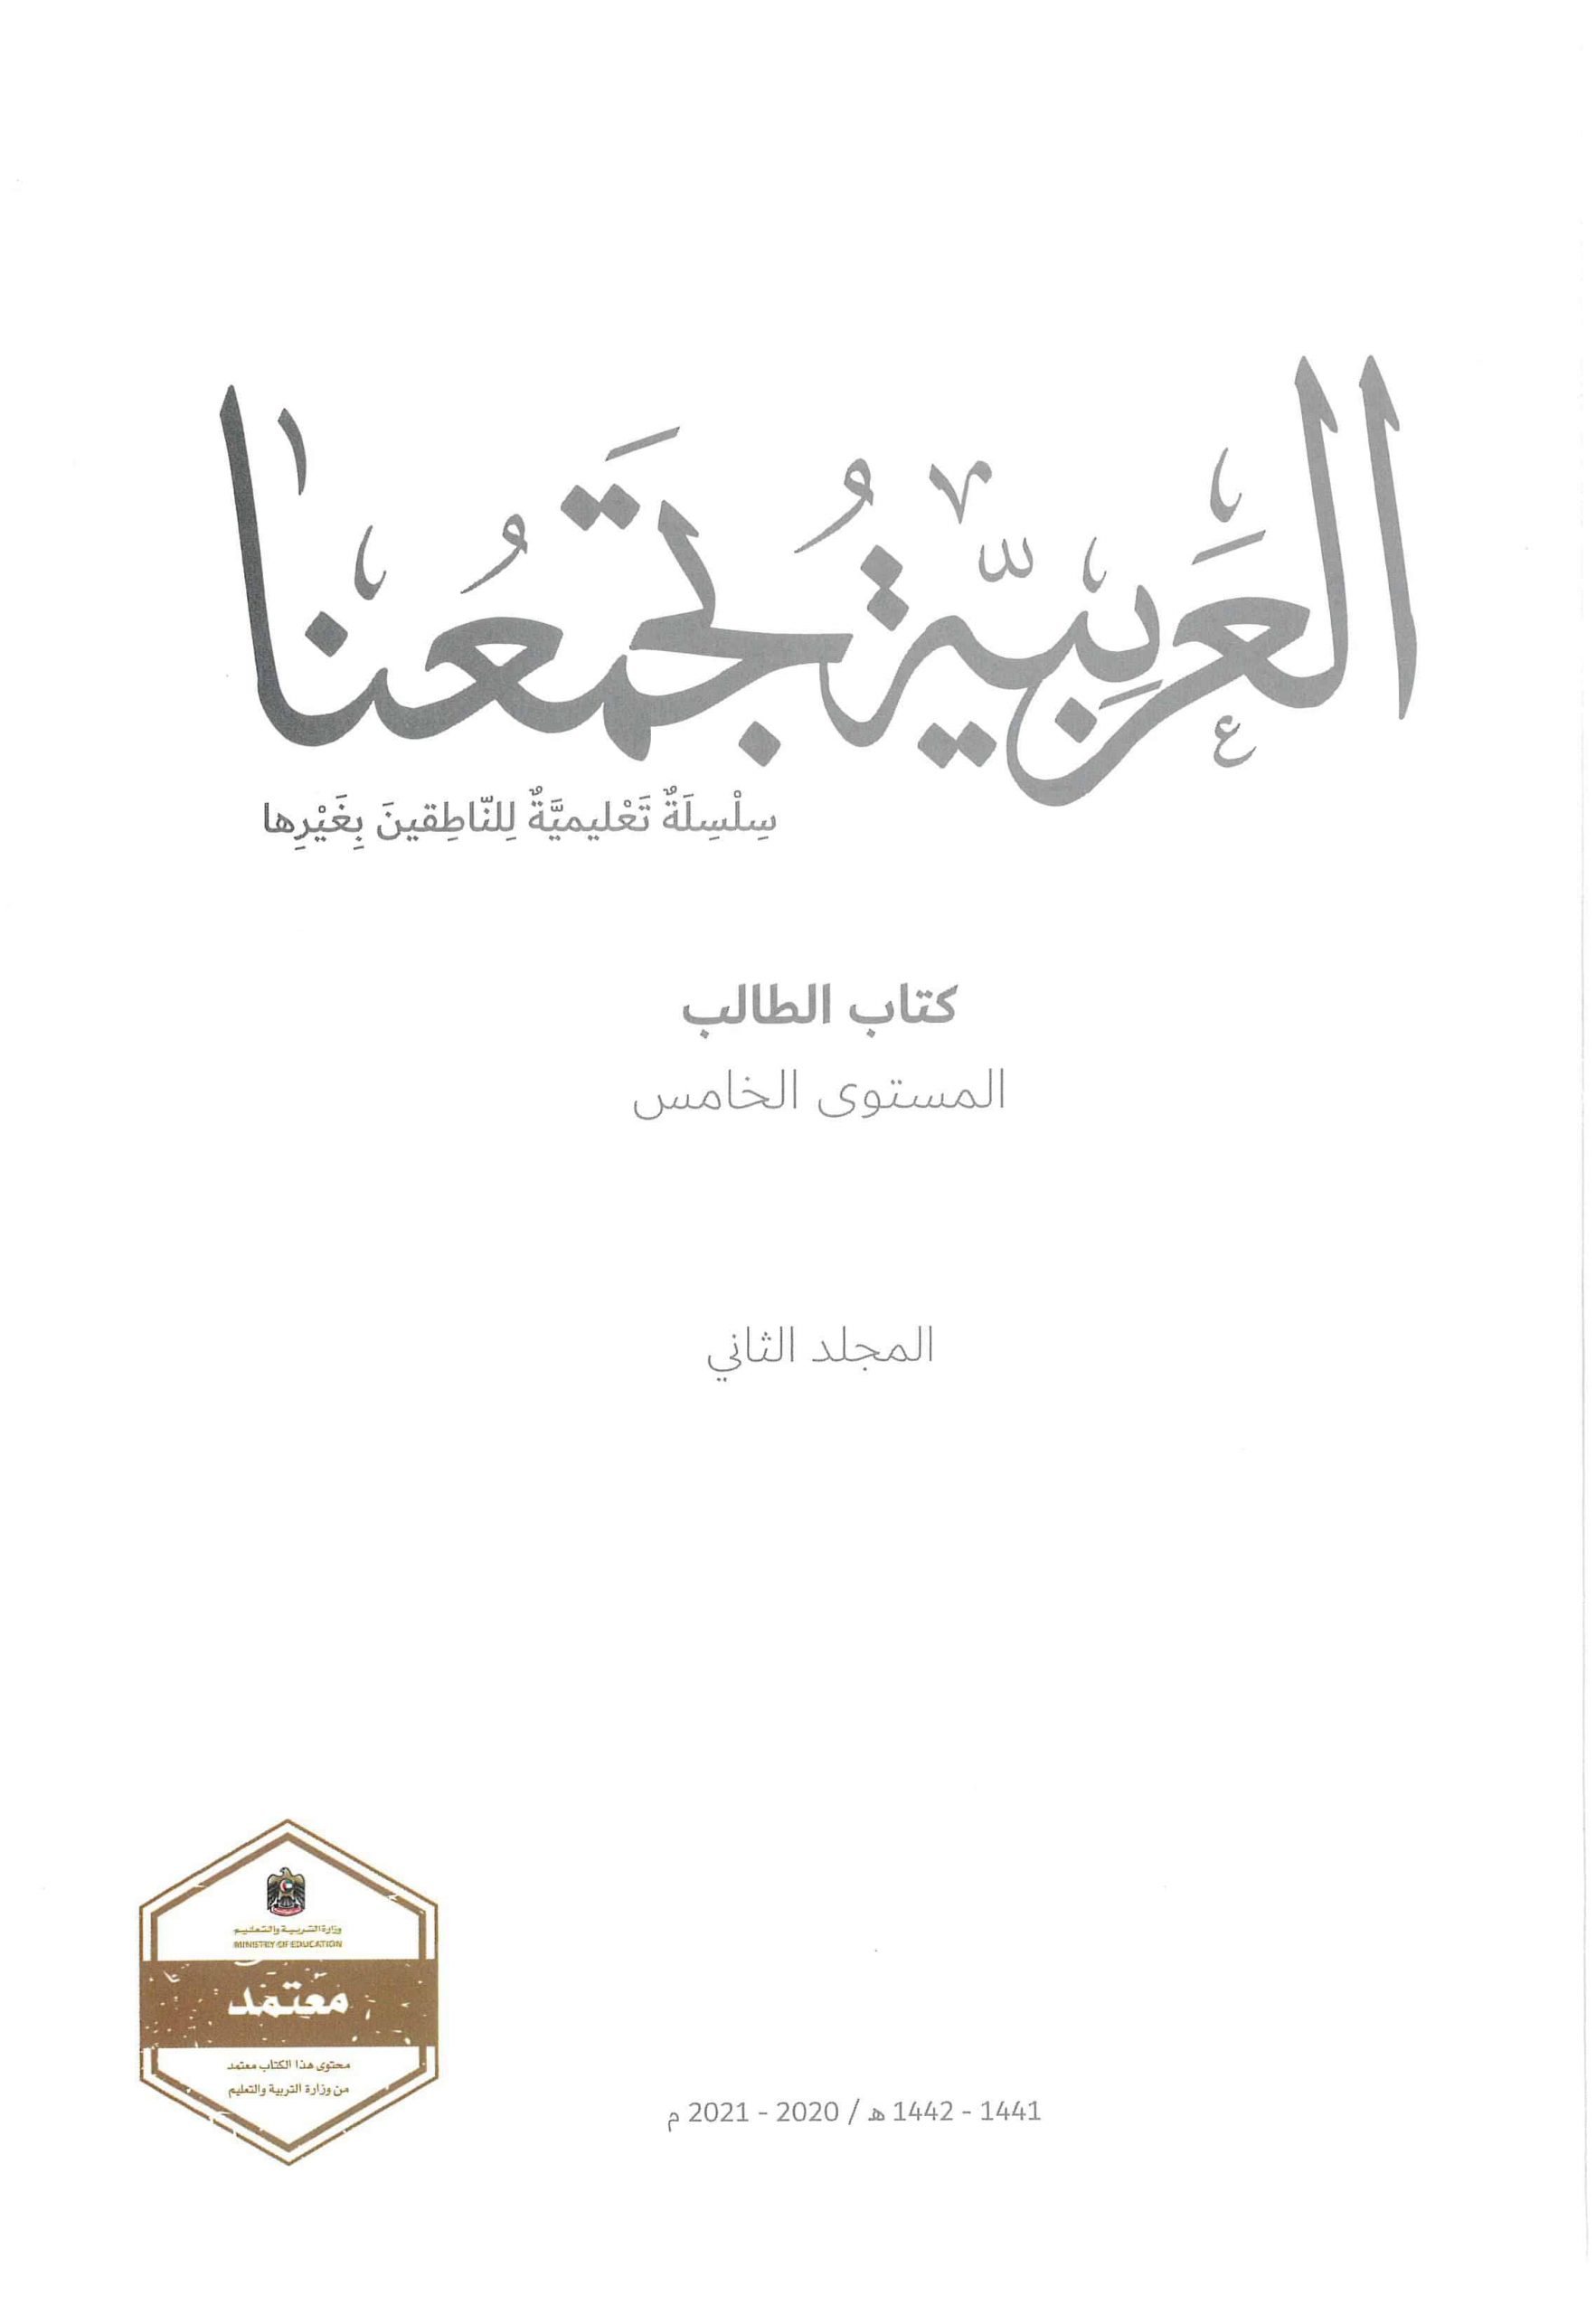 كتاب الطالب الفصل الدراسي الثاني 2020-2021 لغير الناطقين بها الصف الخامس مادة اللغة العربية 